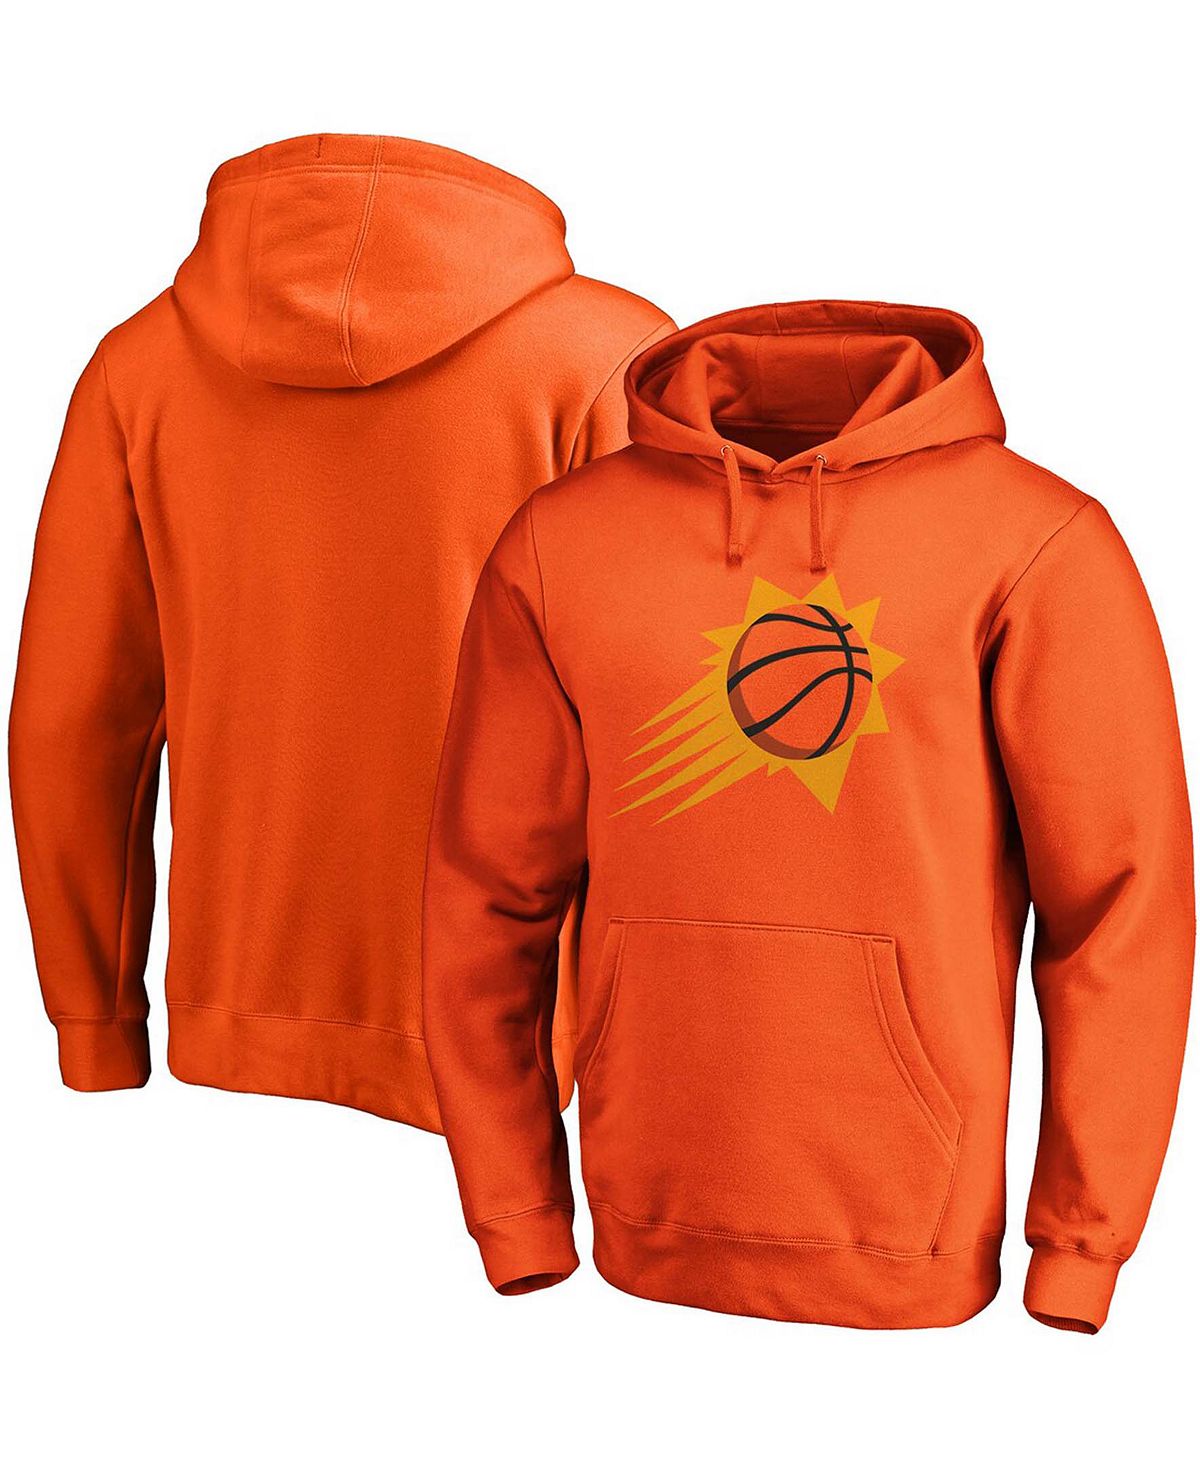 Мужская оранжевая худи с логотипом phoenix suns primary team logo Fanatics